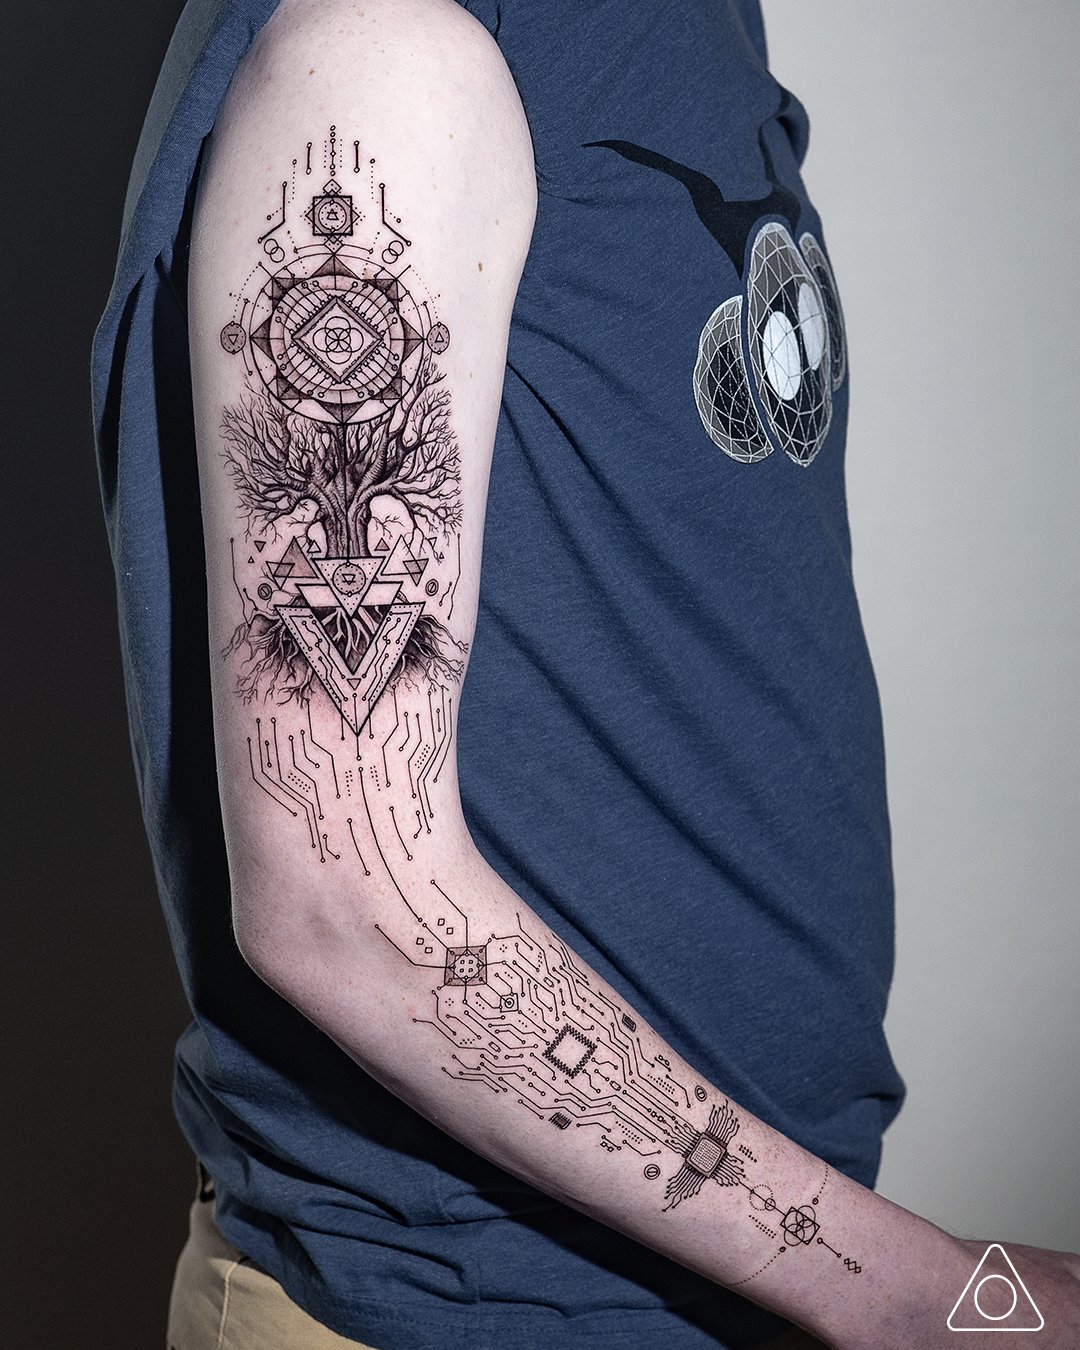 Stunning Realistic Fine Line Tattoos by Balazs Bercsenyi  KickAss Things  Fine  line tattoos Tattoos Line tattoos